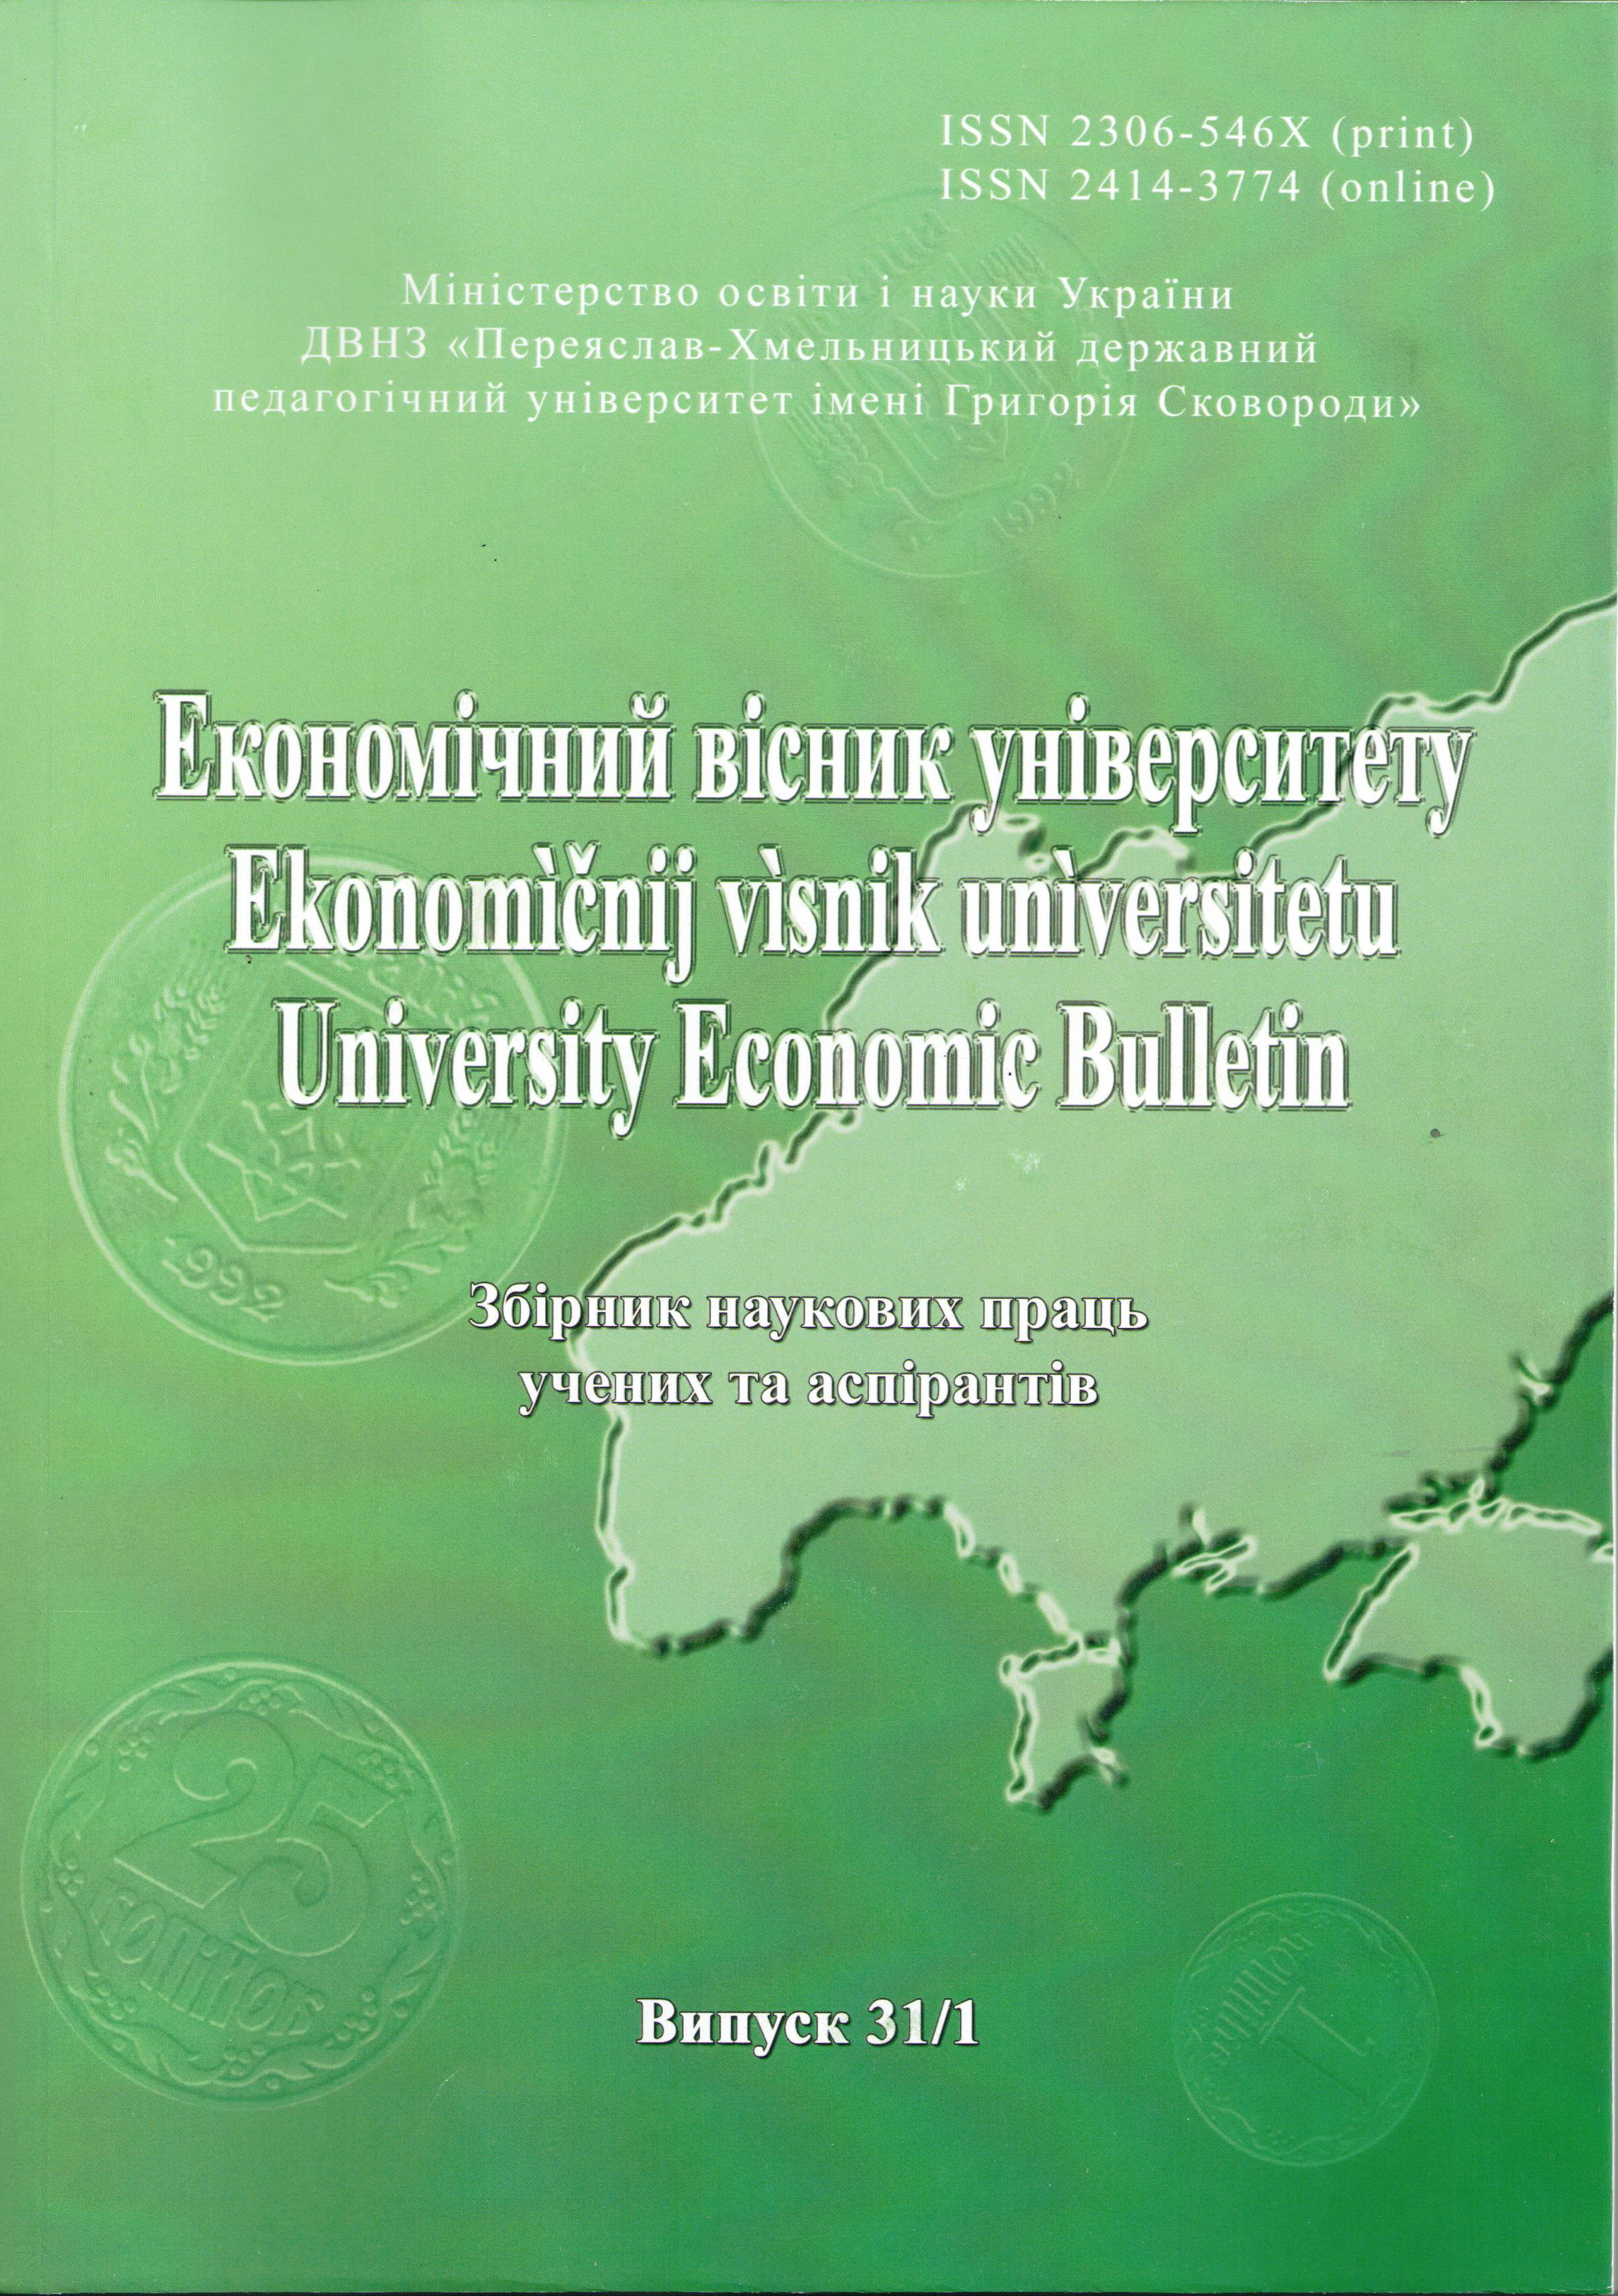 Удосконалення інвестиційної привабливості економіки України